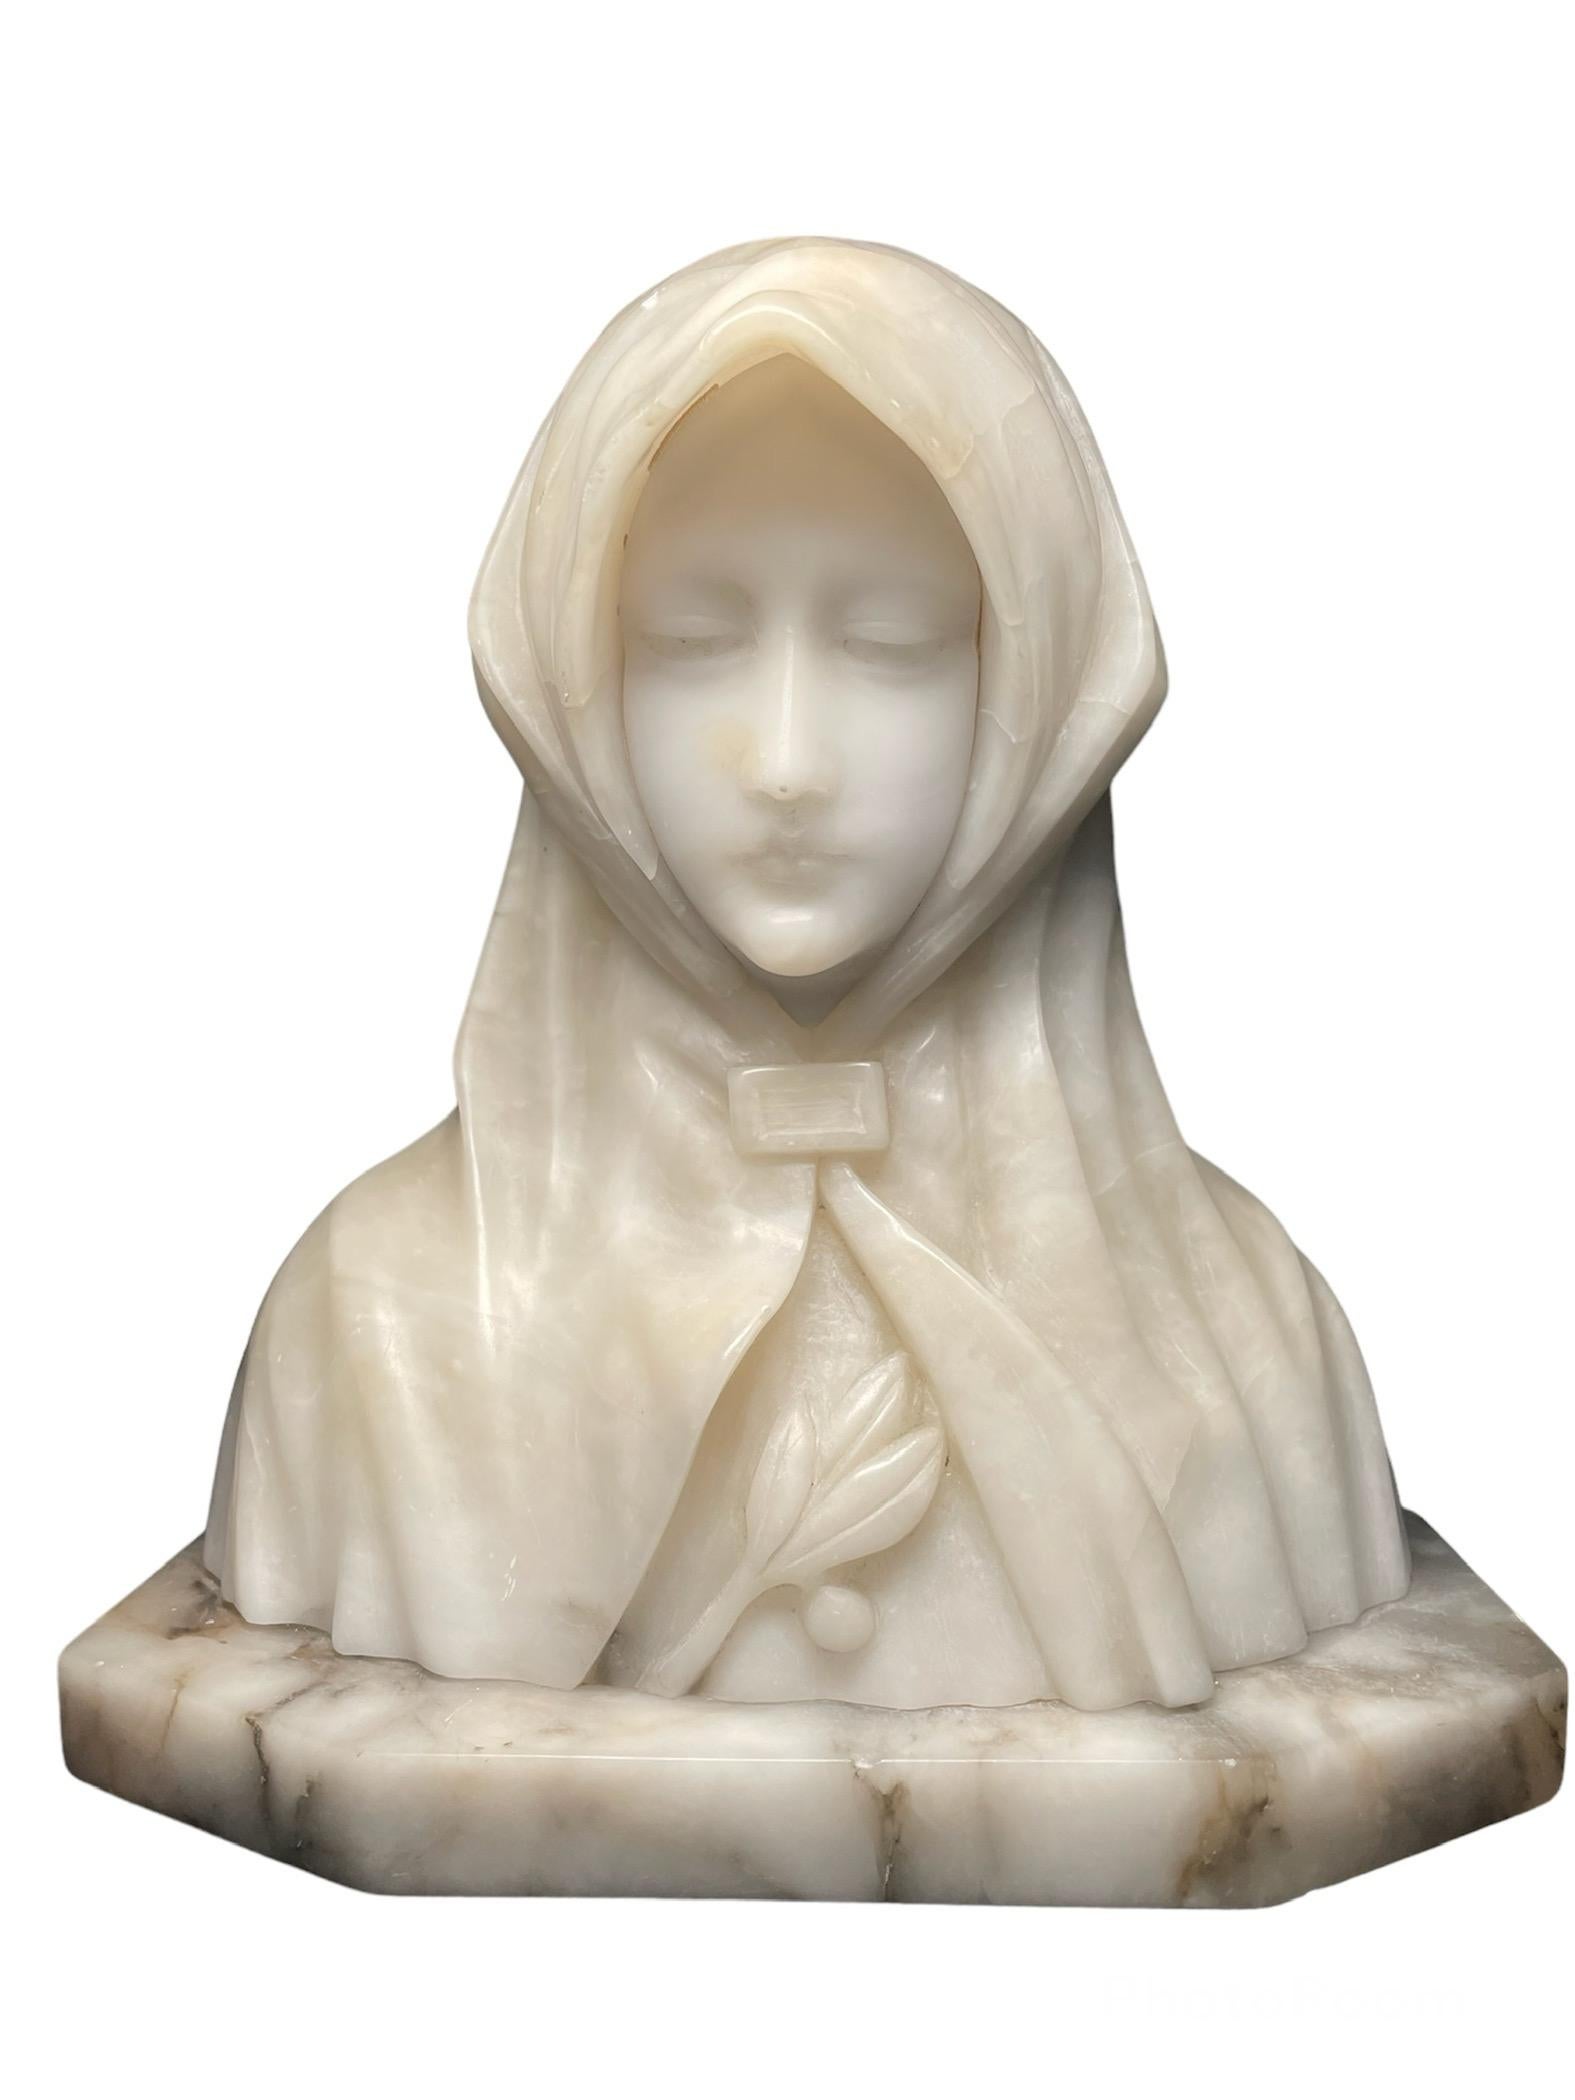 Il s'agit d'un buste en albâtre et en marbre de sainte Claire d'Assise. Elle représente une jeune femme dont la tête/le visage est recouvert d'un manteau. Elle regarde vers le bas, très paisiblement, tout en semblant prier Dieu. Une branche